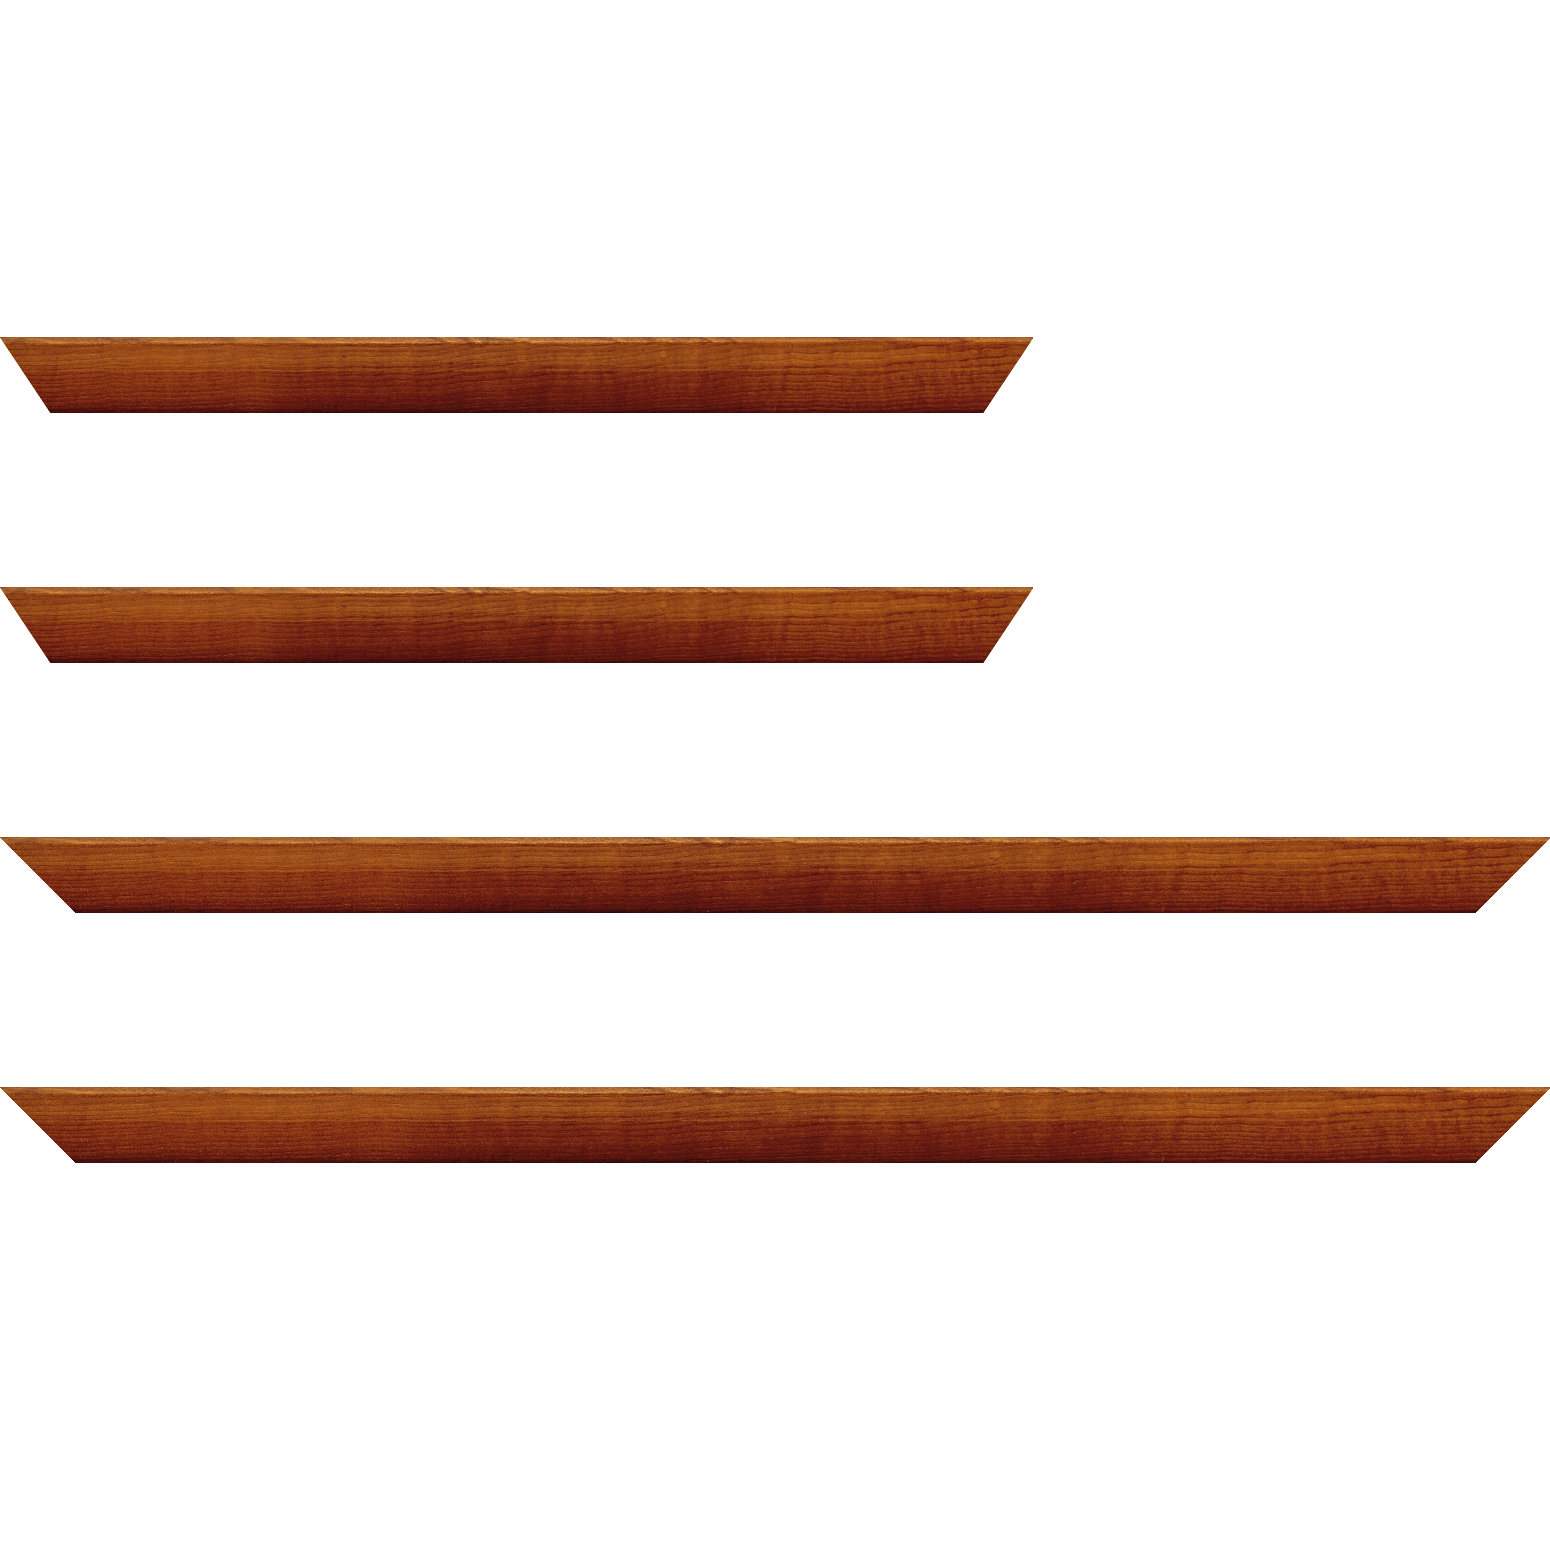 Baguette bois profil arrondi en pente plongeant largeur 2.4cm couleur marron miel finition vernis brillant,veine du bois  apparent (pin) , - 24x30